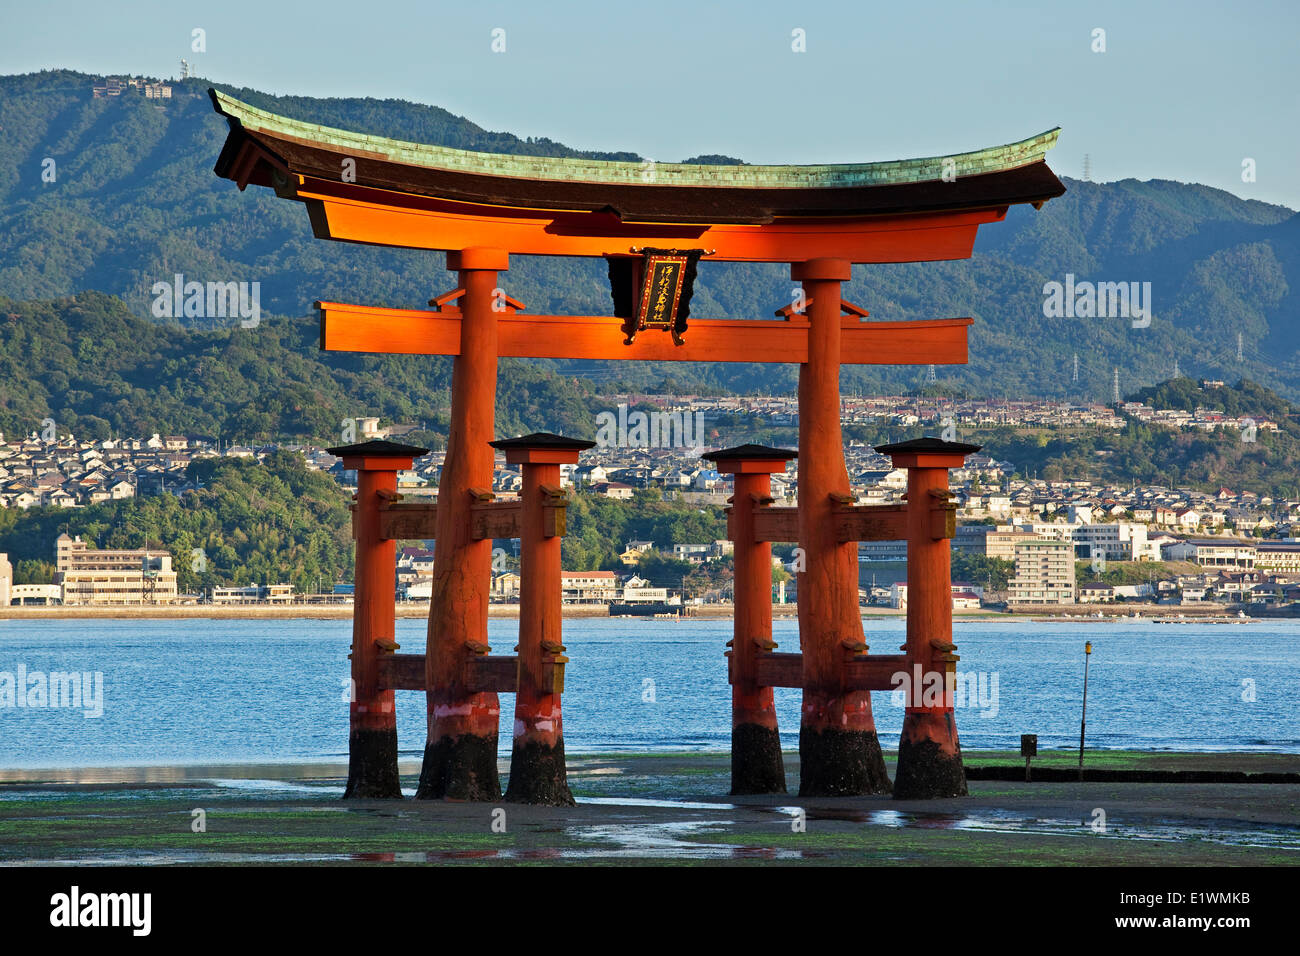 Riesige Torii Tor d. h. Bestandteil der Itsukushima-Schrein Komplex auf der Insel Miyajima, Japan. Stockfoto